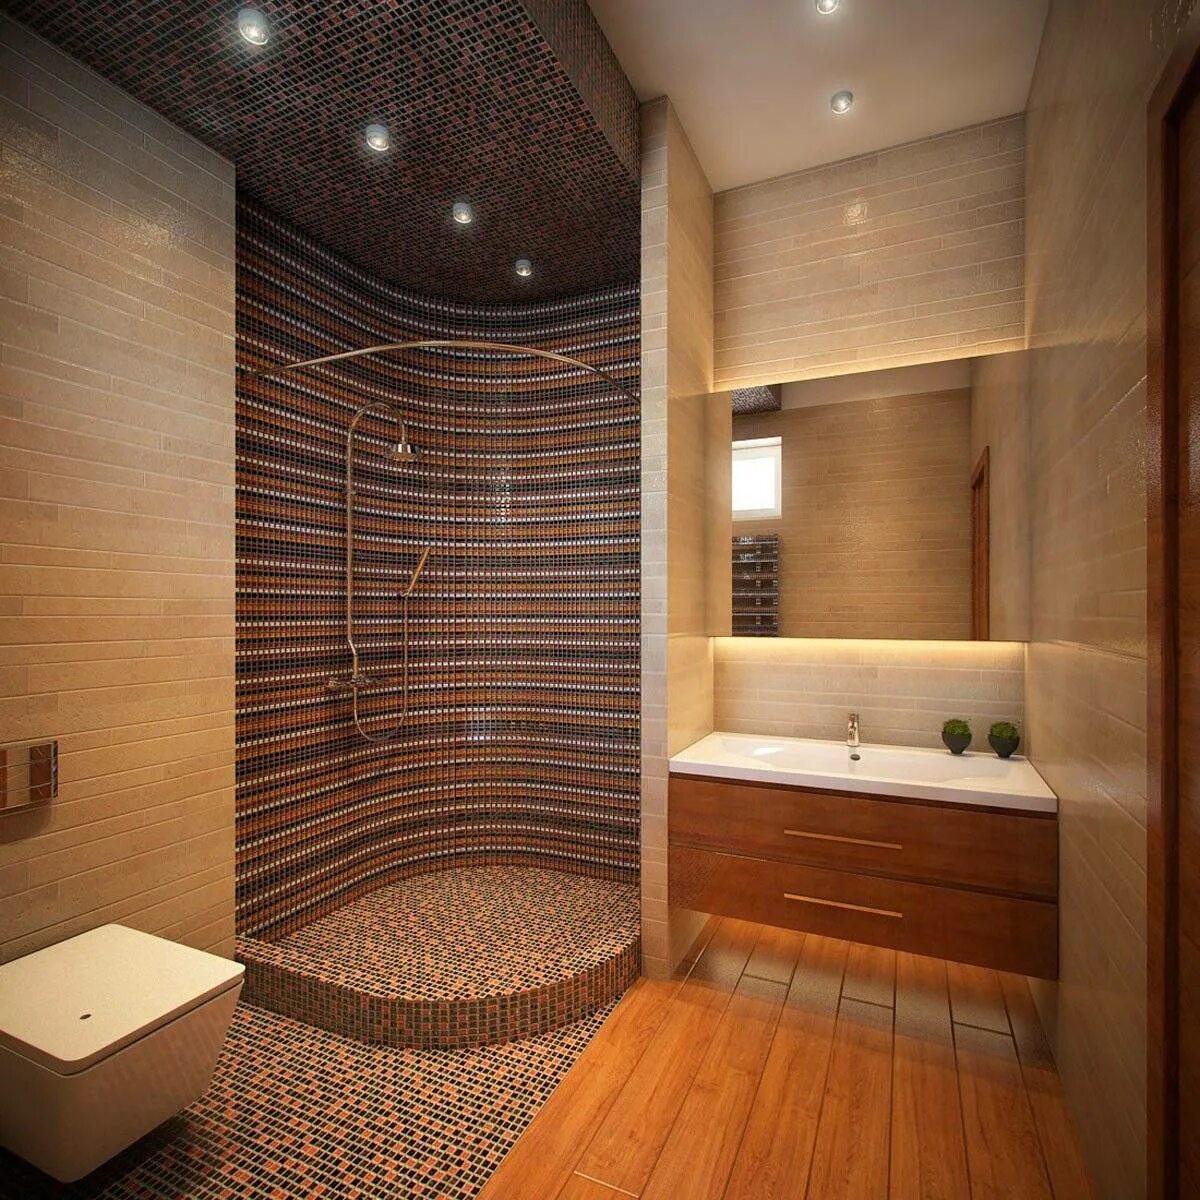 Плитка в душевую комнату дизайн. Душевая комната. Ванная комната душевая. Интерьер душевой комнаты. Душевая и туалет совмещенные.